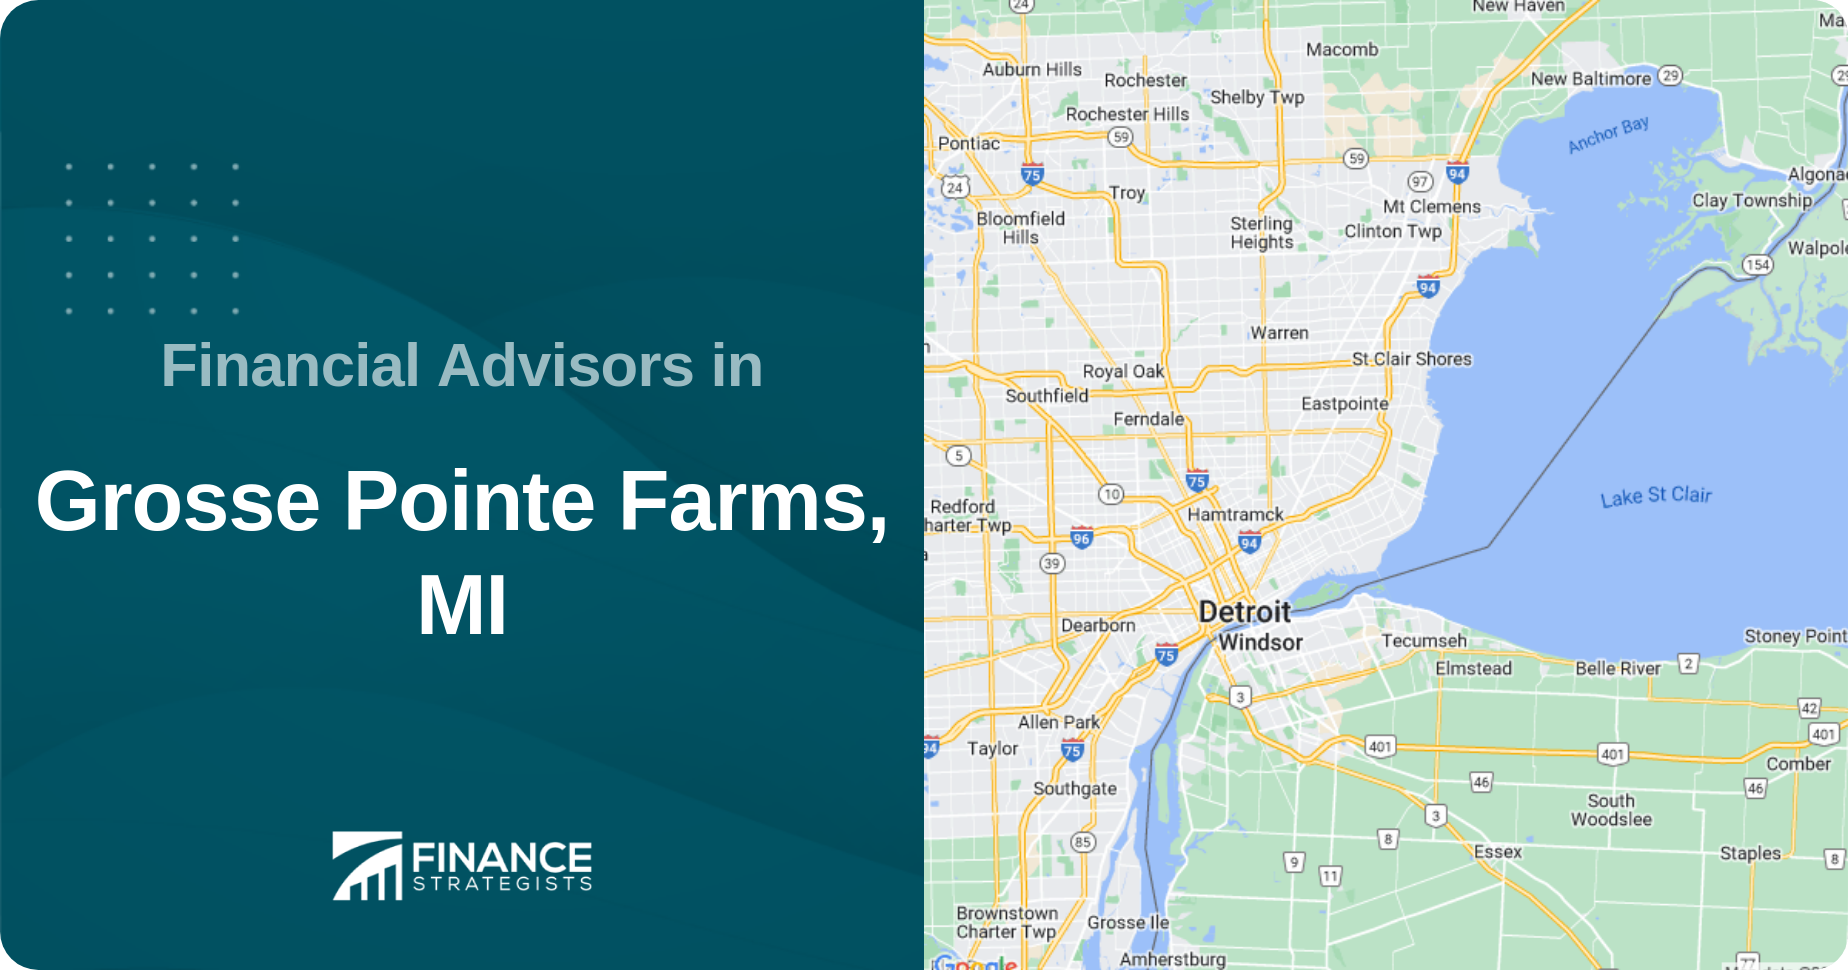 Financial Advisors in Grosse Pointe Farms, MI